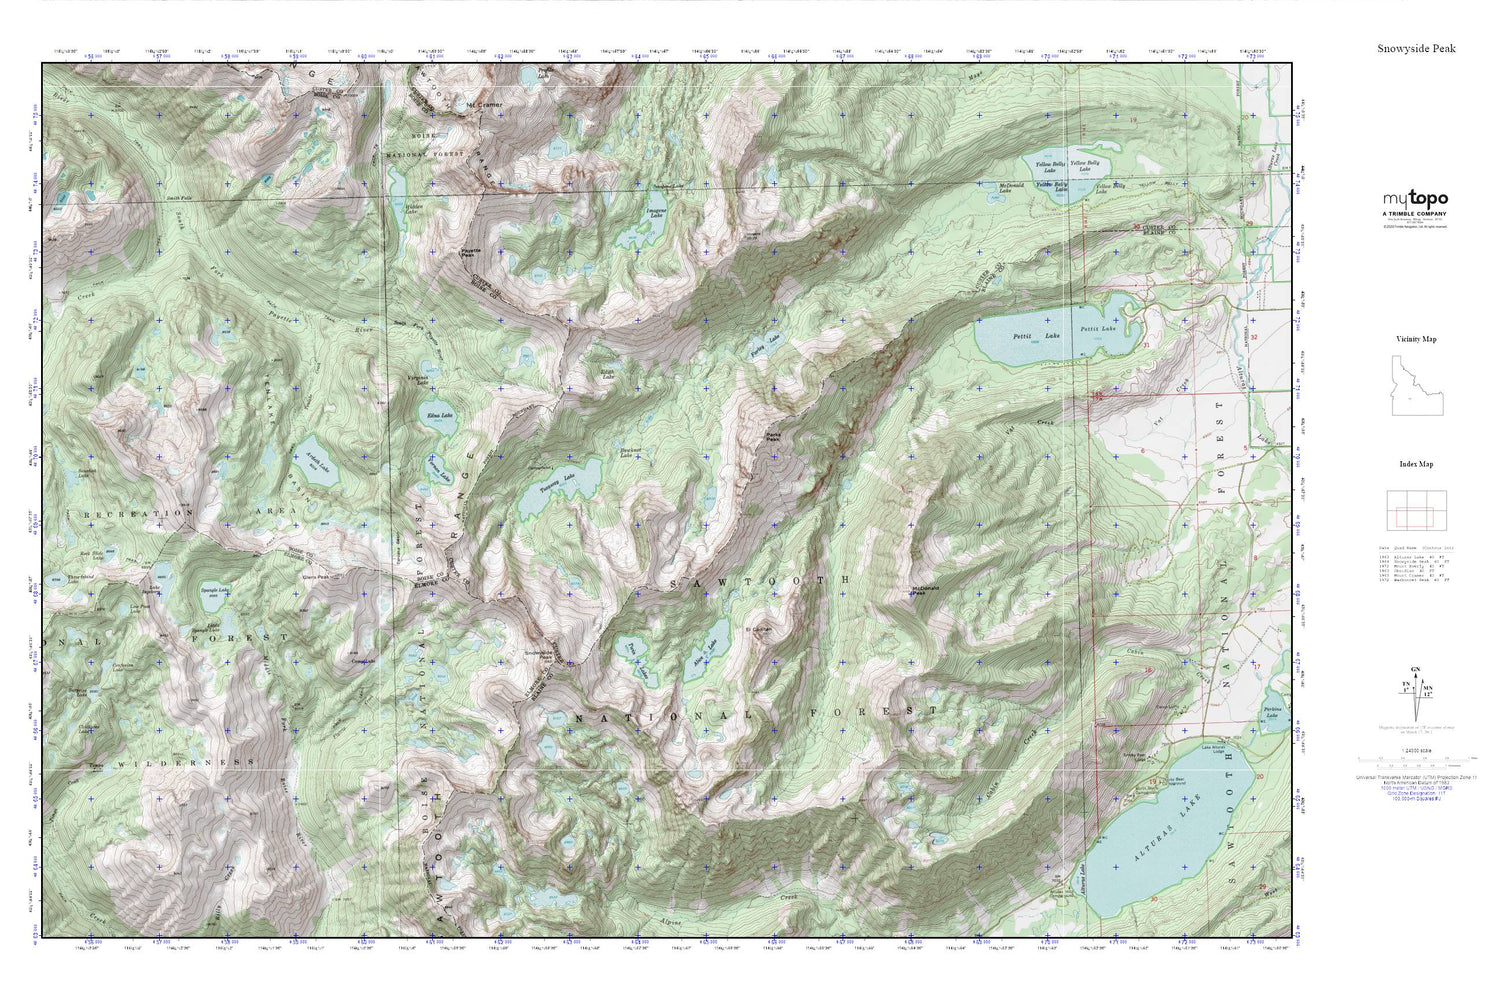 Snowyside Peak MyTopo Explorer Series Map Image